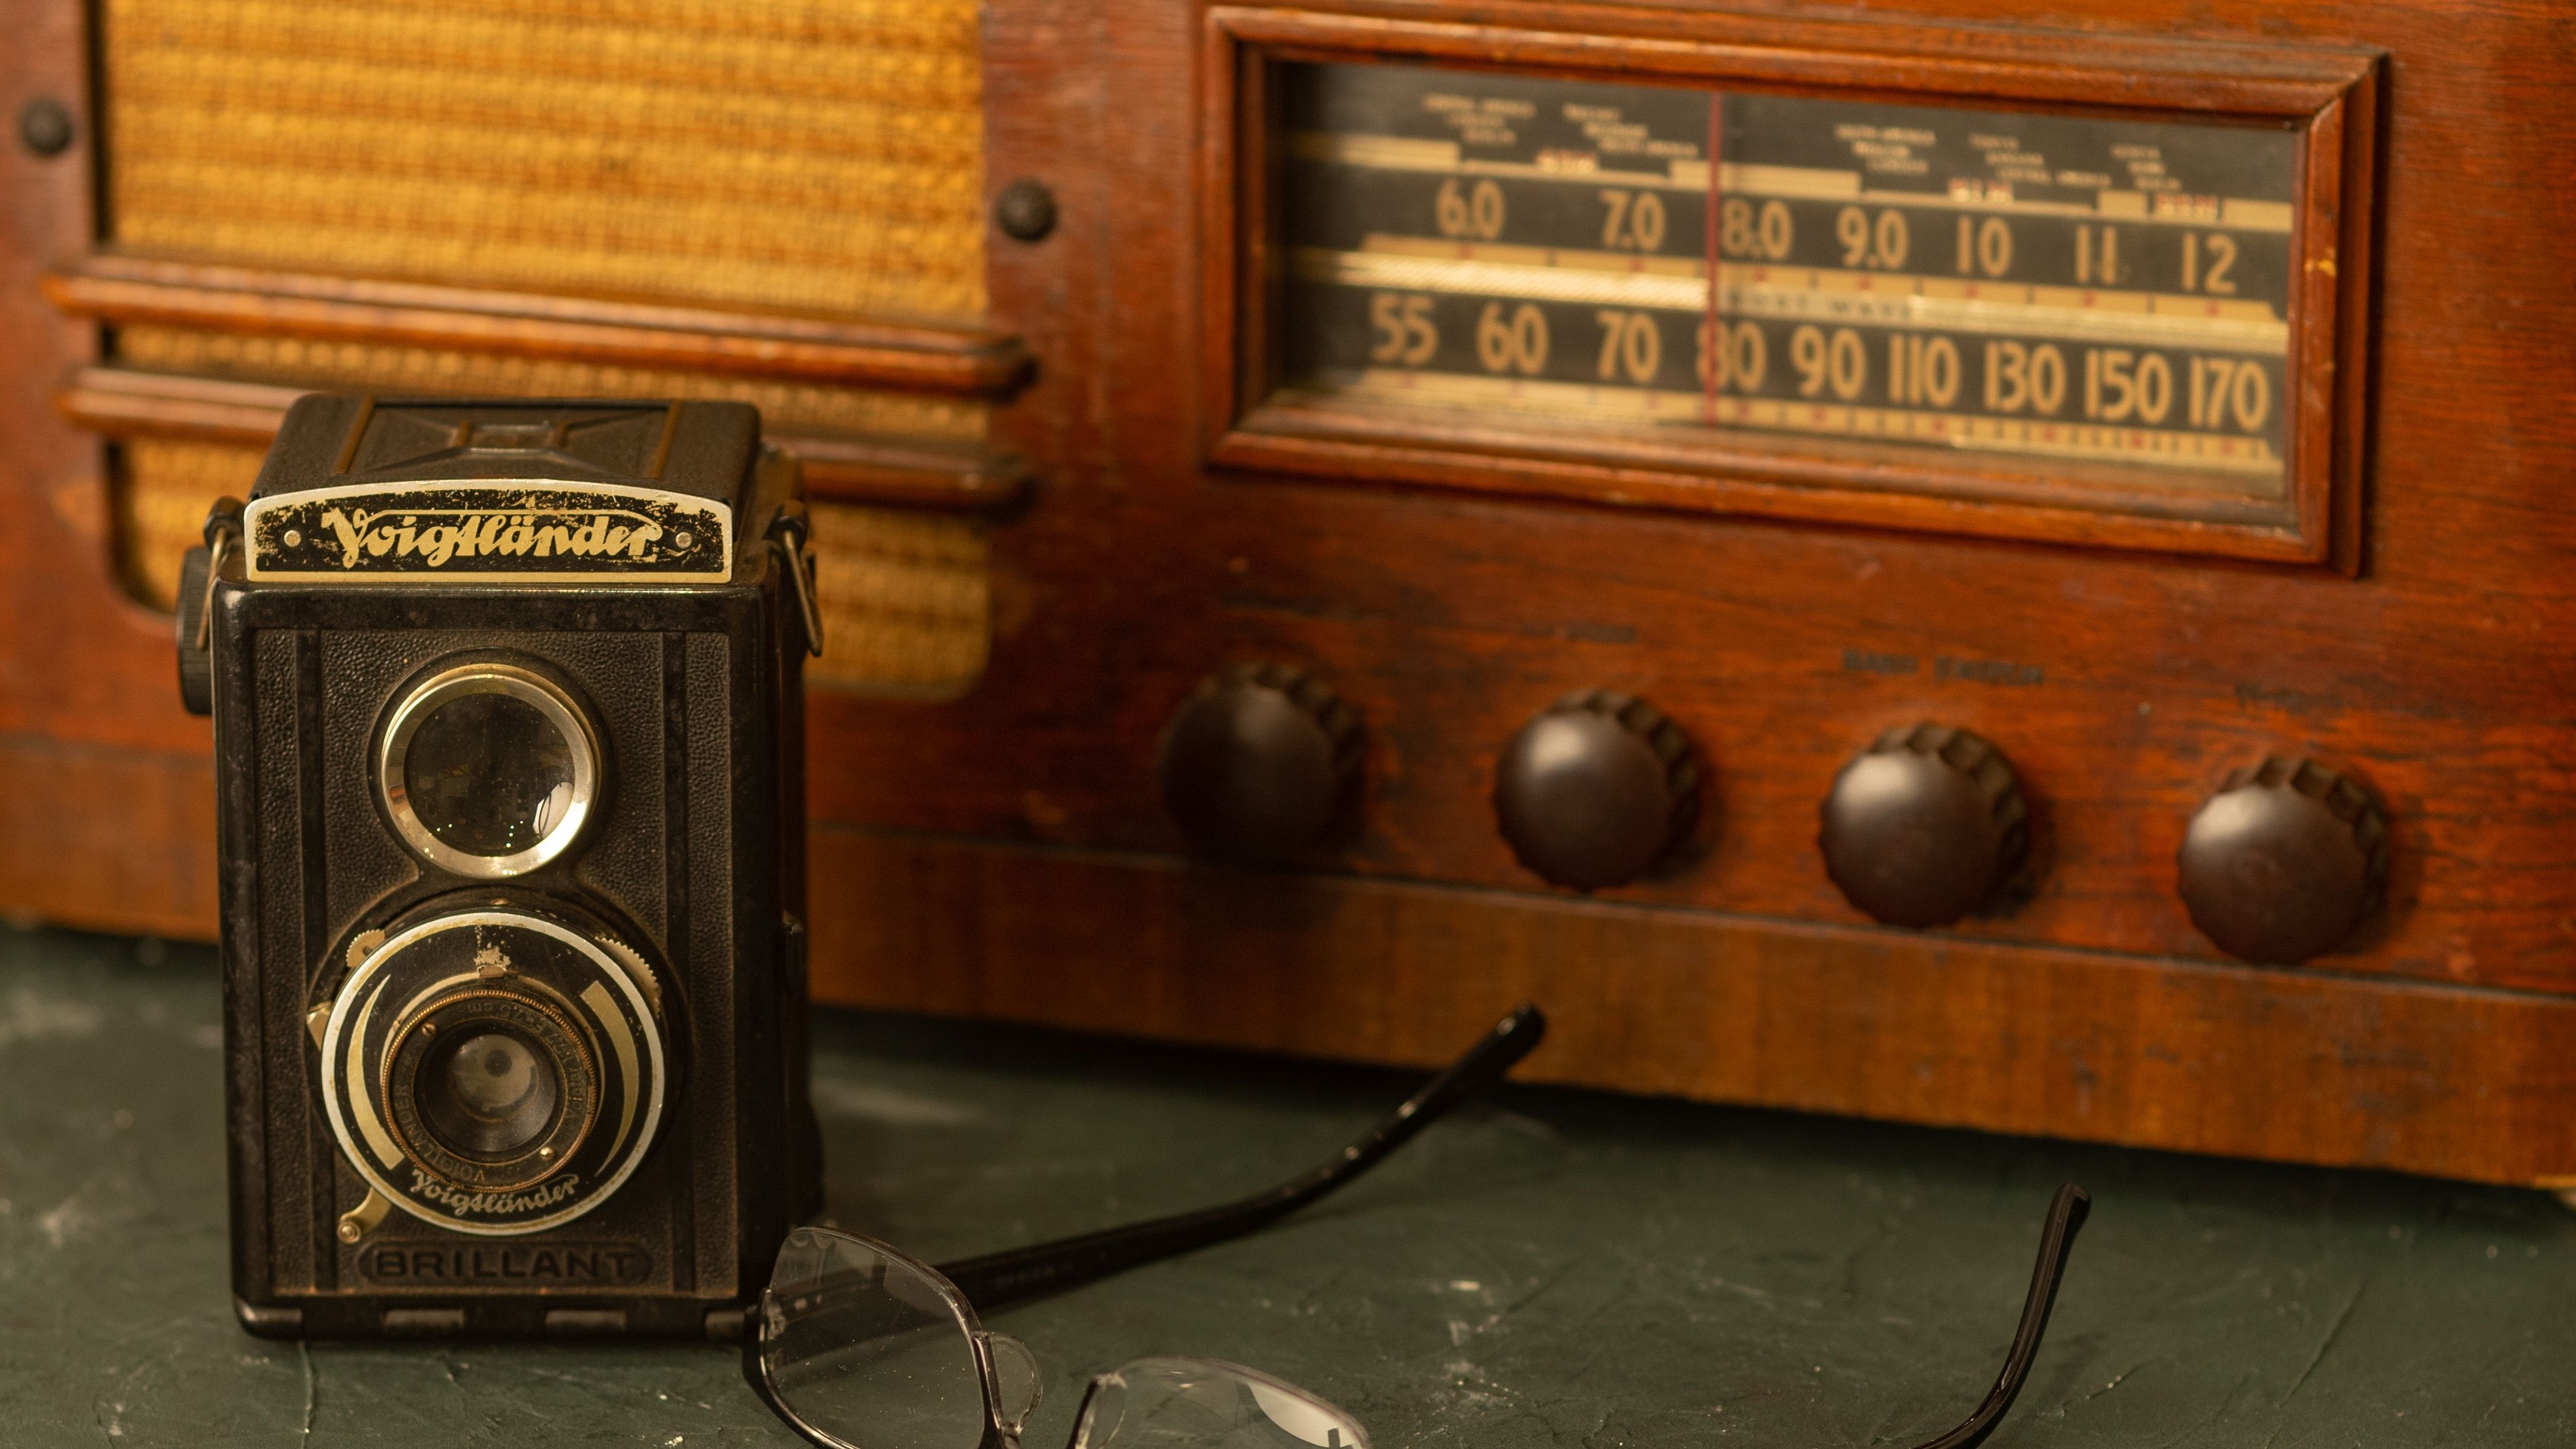 Izložba starih radio aparata, četvrtak, 8.12. u 19 sati